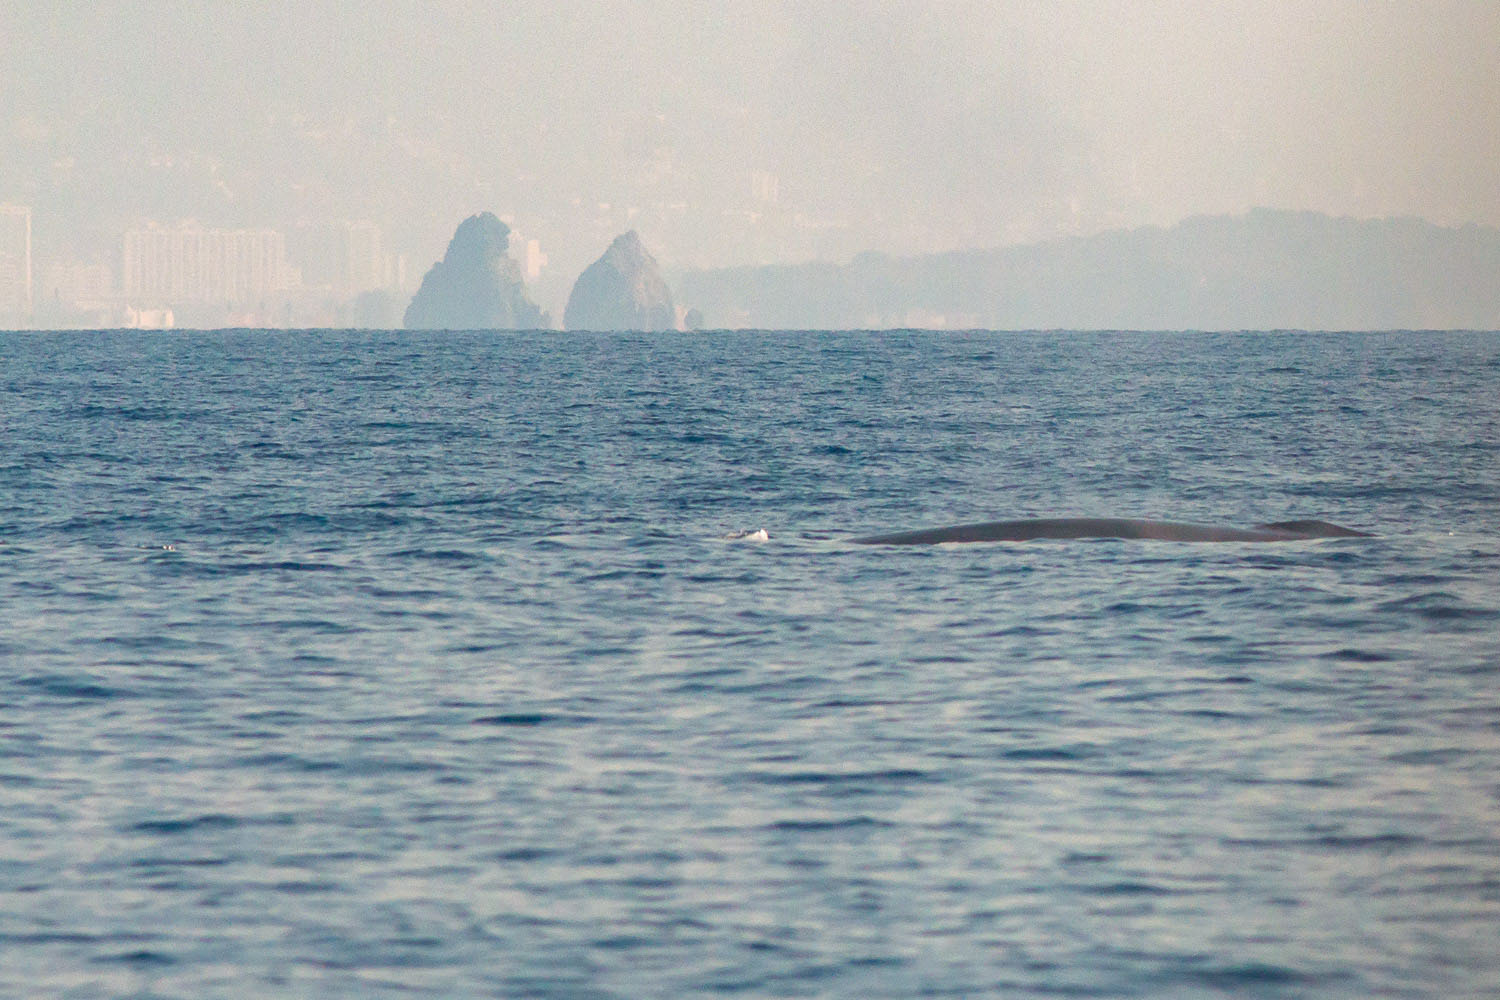 voyage scientifique - cetaces de mediterranee vers la corse a la voile 42